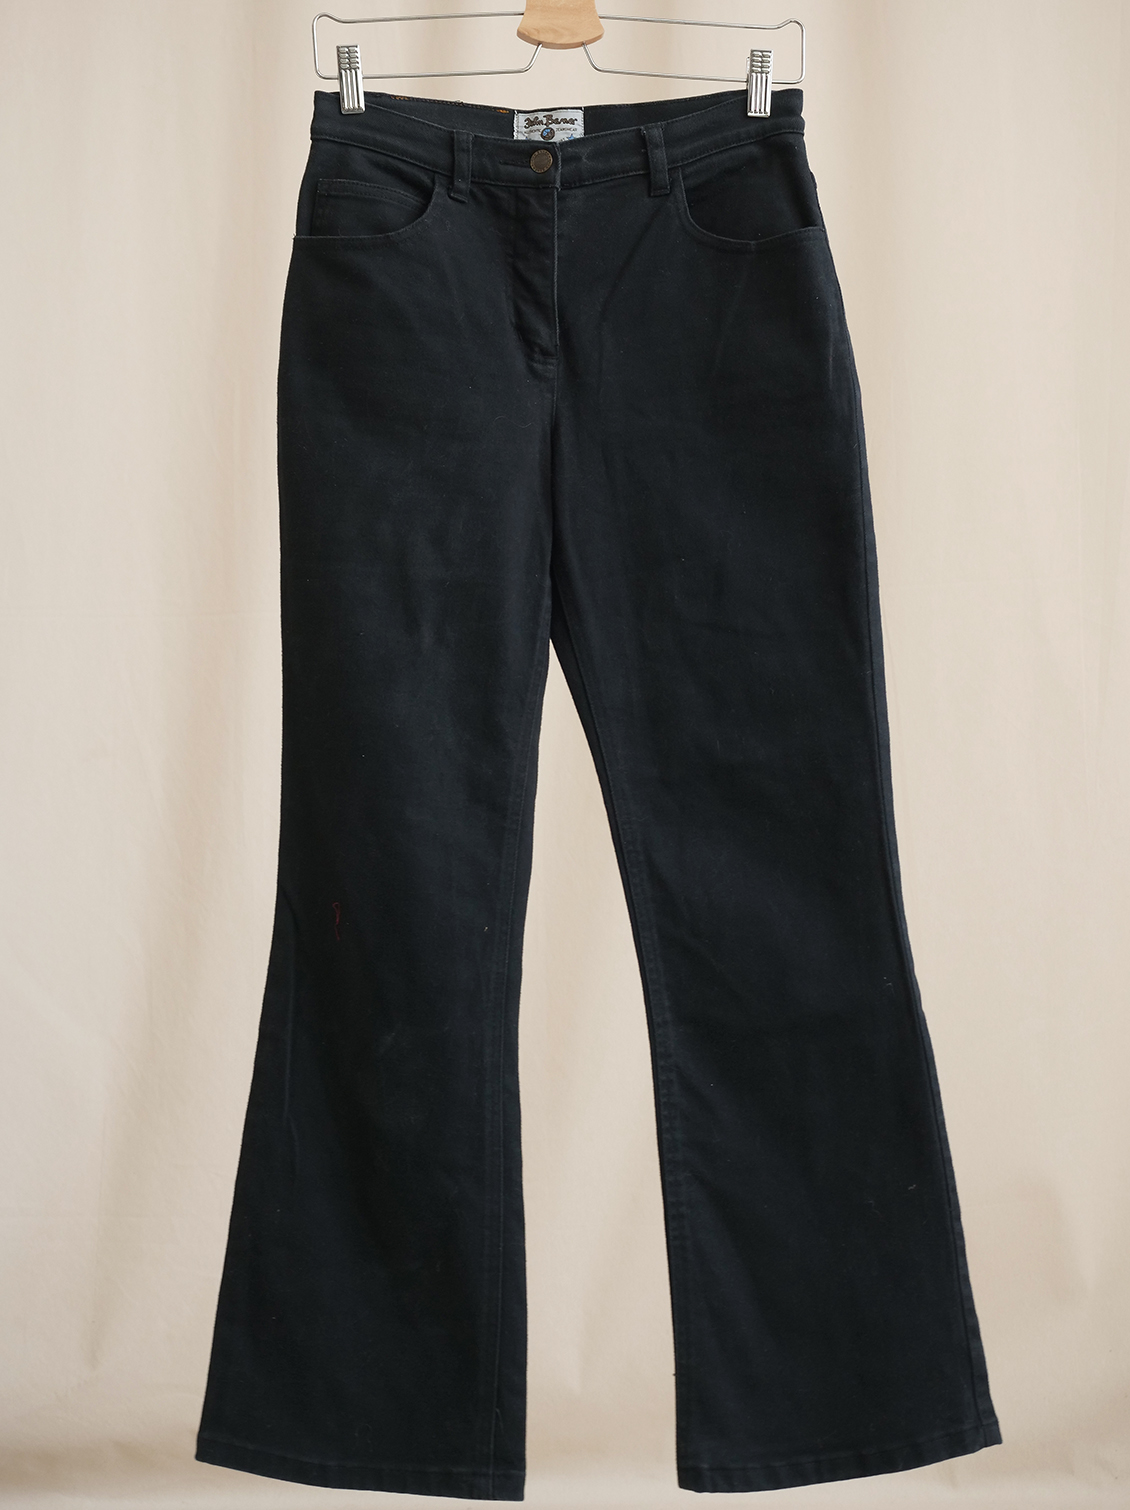 Vintage John Baner Jeans - CLOTHING